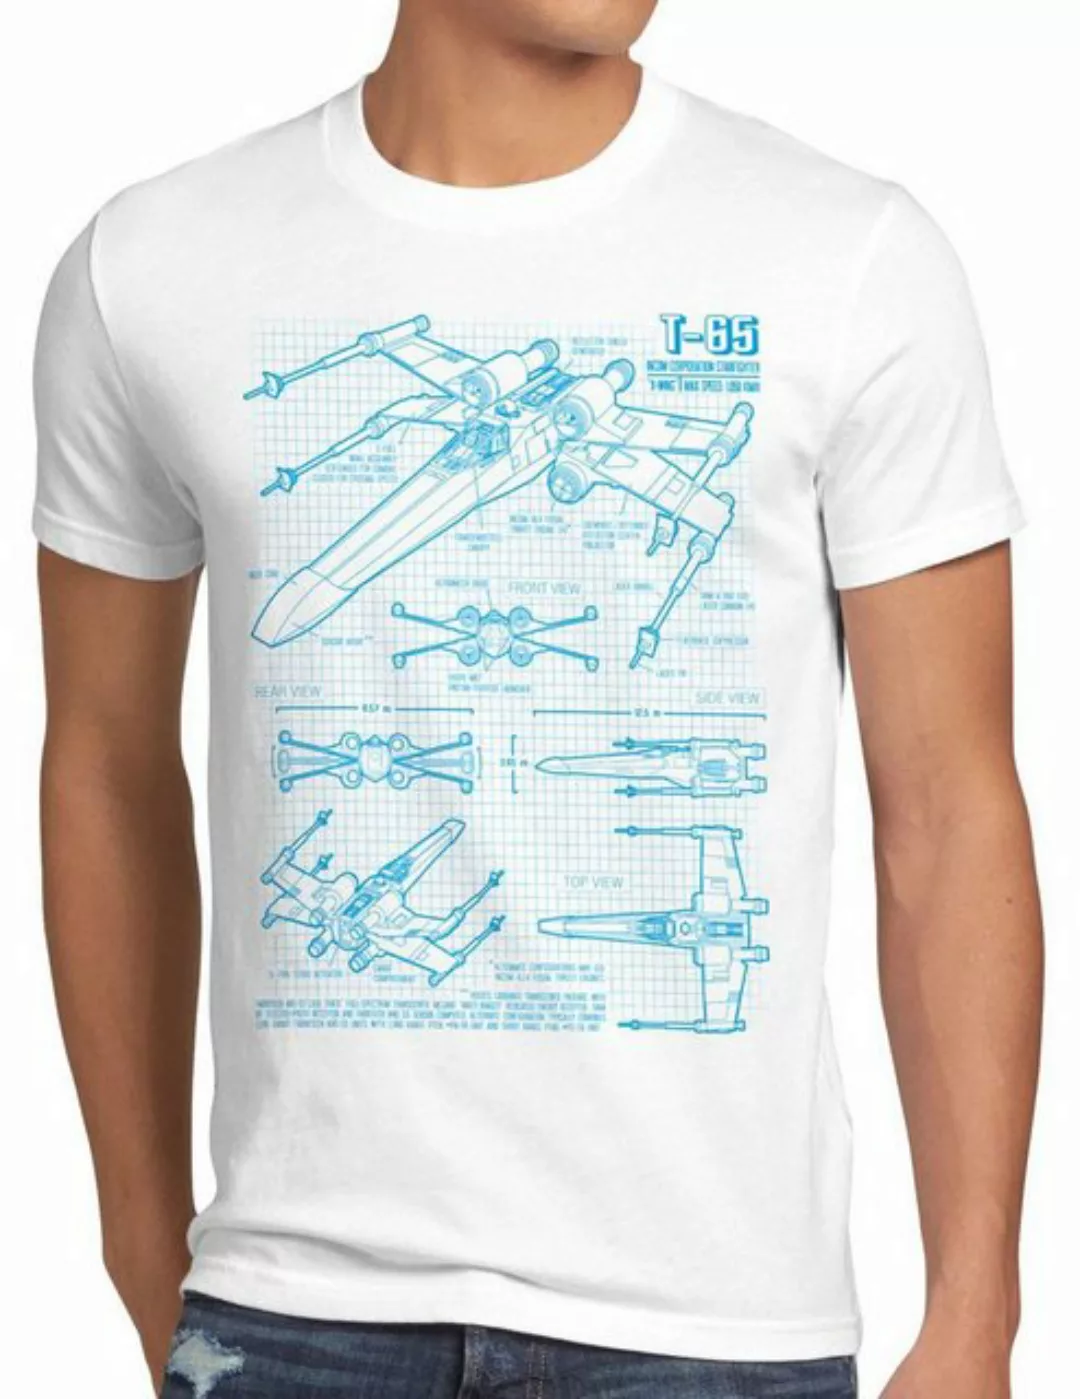 style3 Print-Shirt T-65 Jäger Herren T-Shirt wing star darth wars rebellion günstig online kaufen